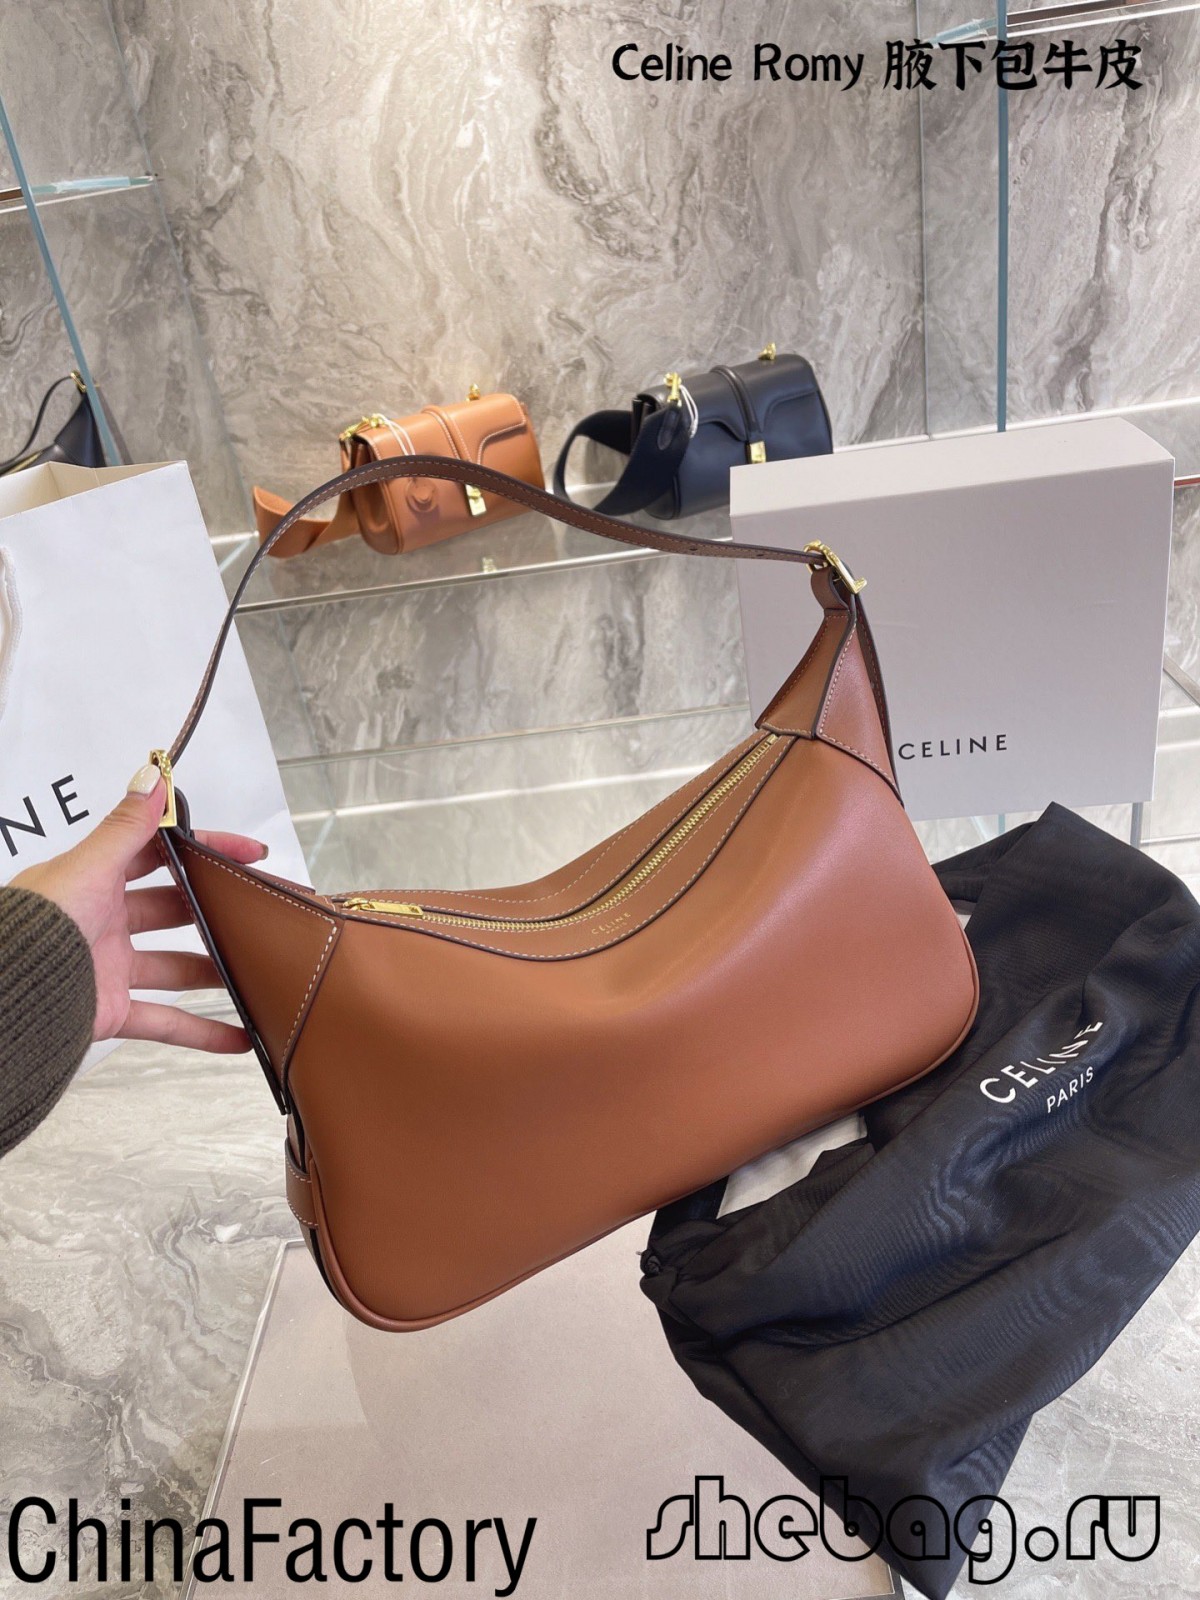 Bedste replika celine tasker anmeldelser: Celine Romy (2022 udgave)-Bedste kvalitet falske Louis Vuitton taske online butik, Replica designer taske ru